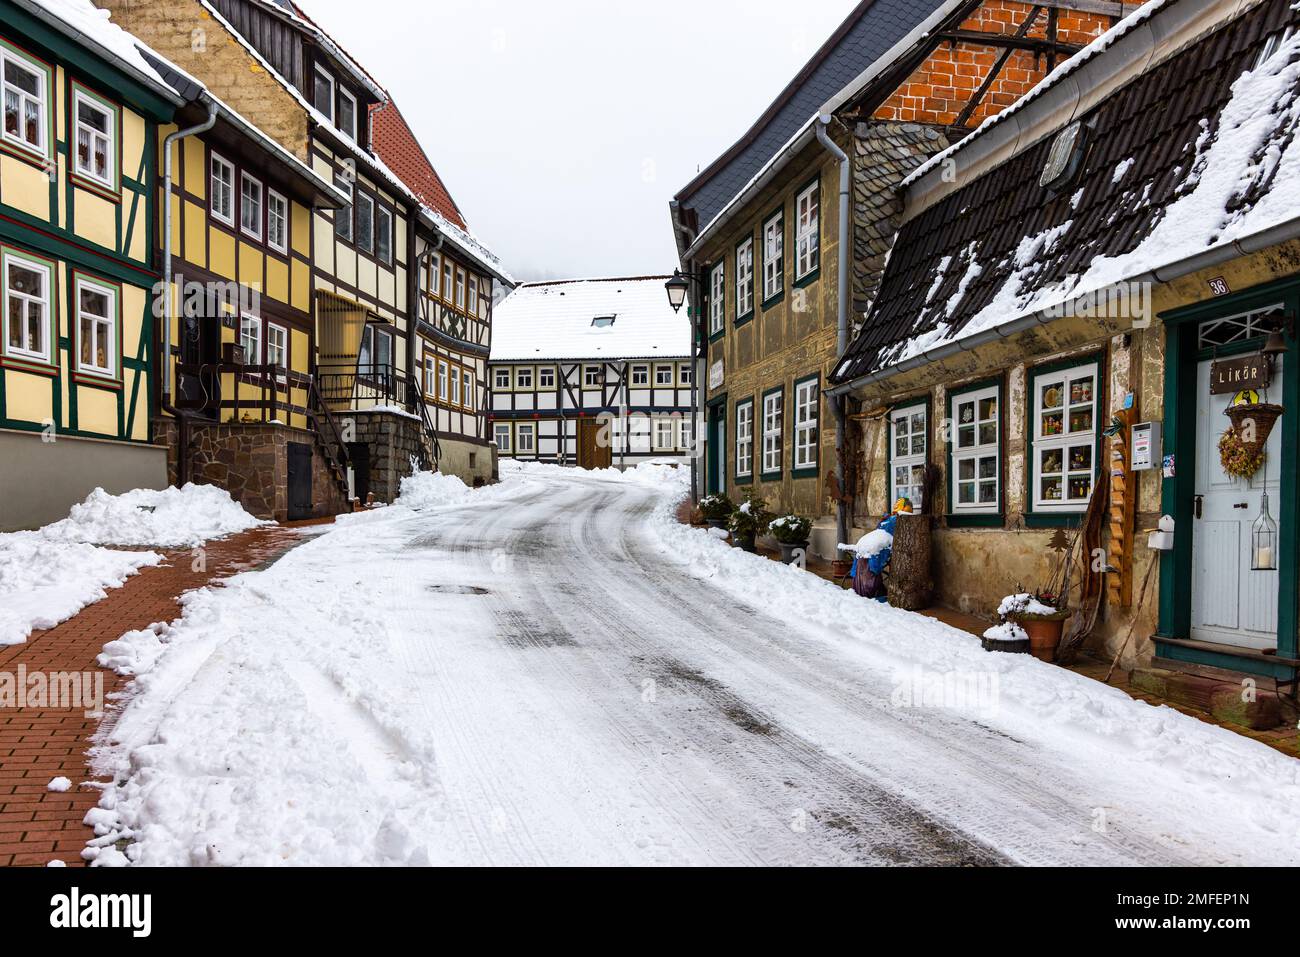 Impressionen aus der Fachwerkstadt Stolberg im Harz Stock Photo